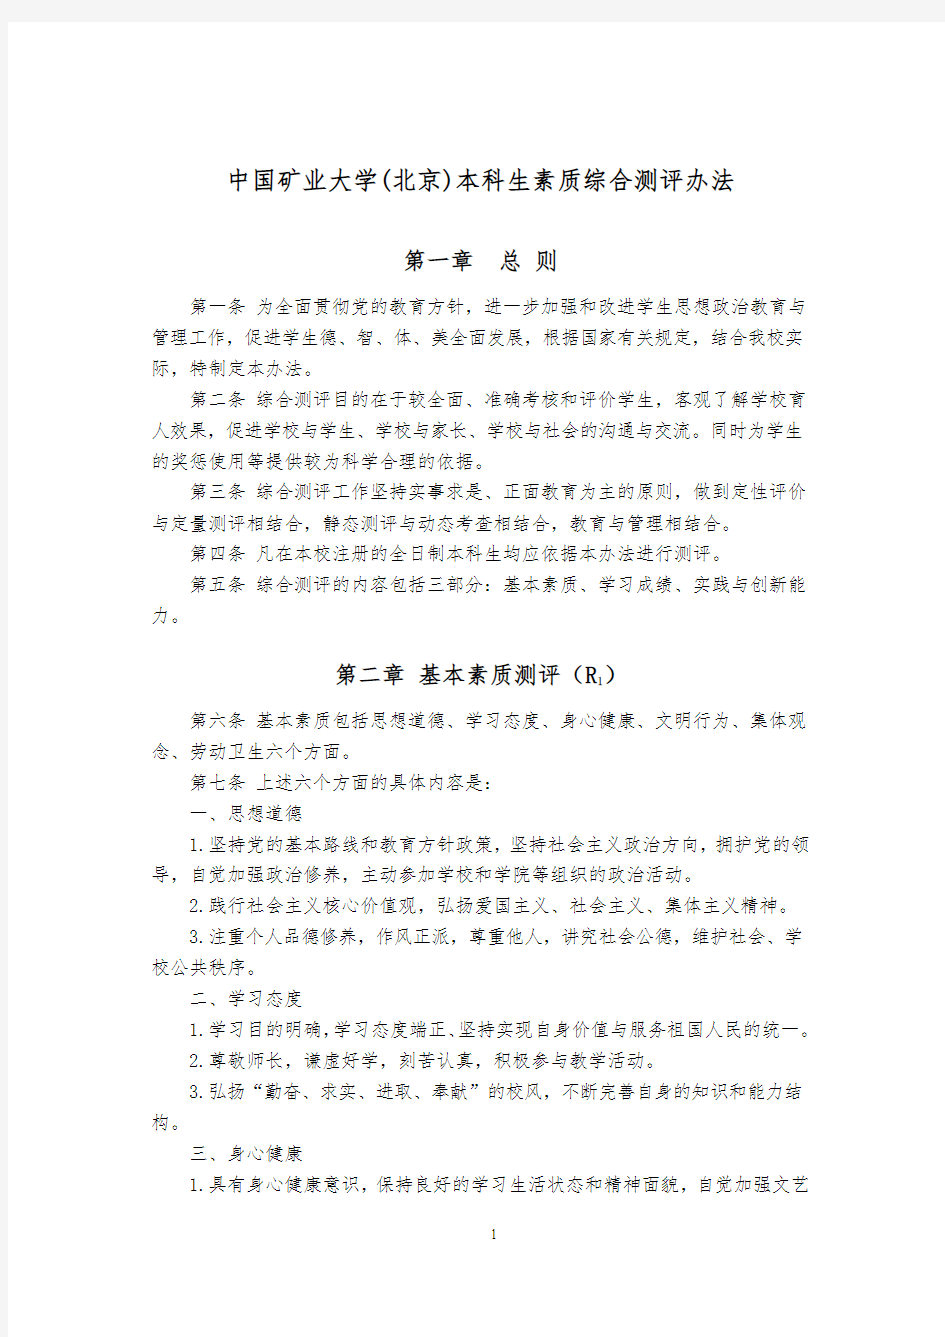 中国矿业大学(北京)本科生素质综合测评办法(修订版)